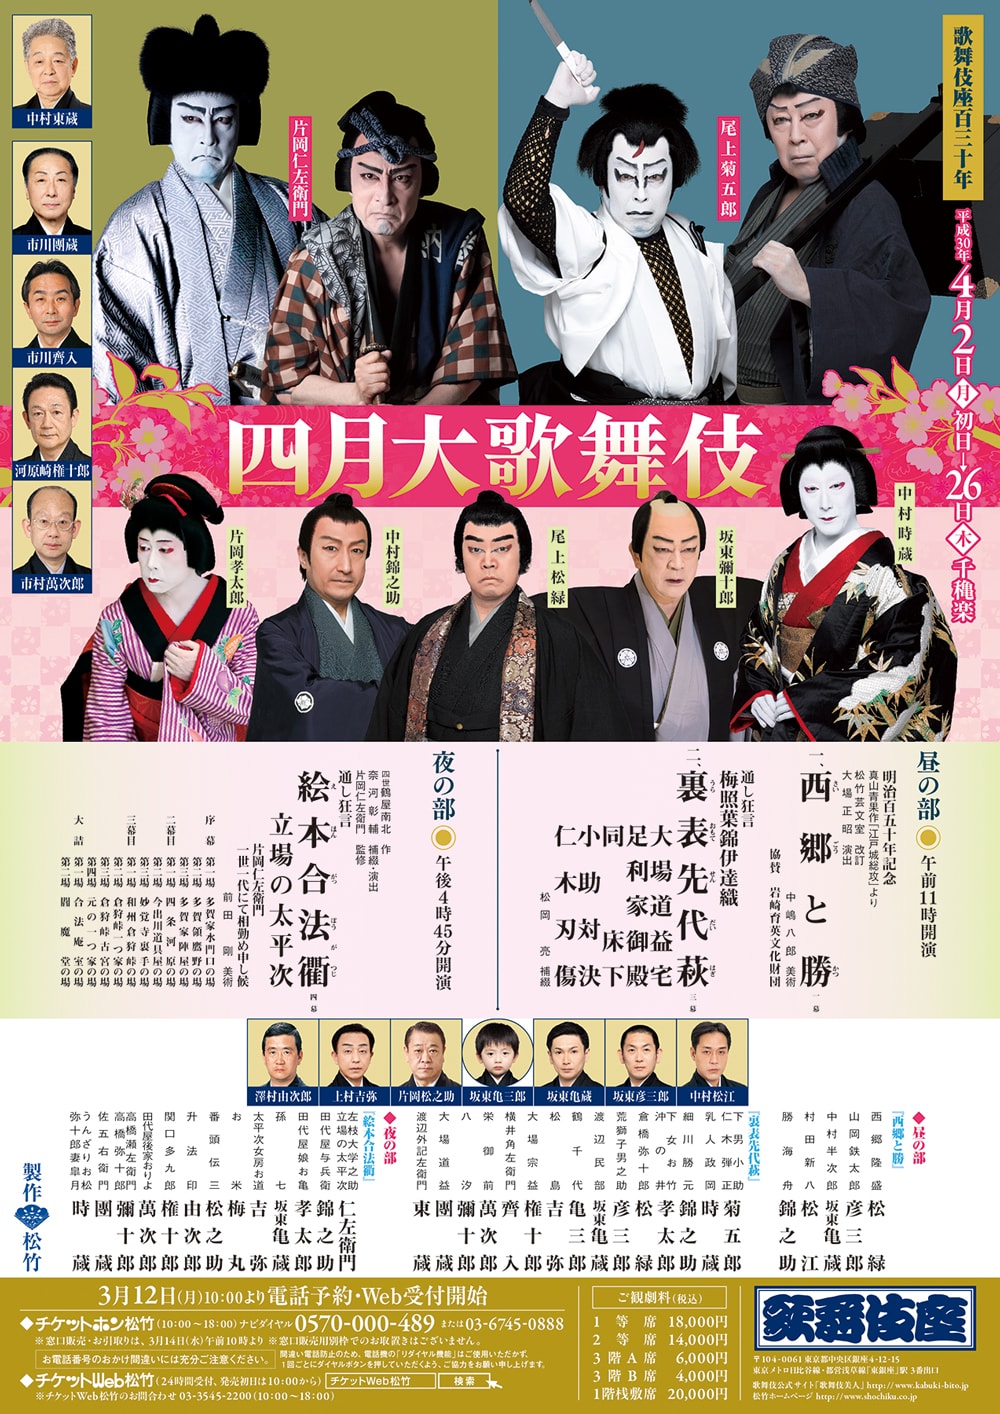 April at the kabukiza